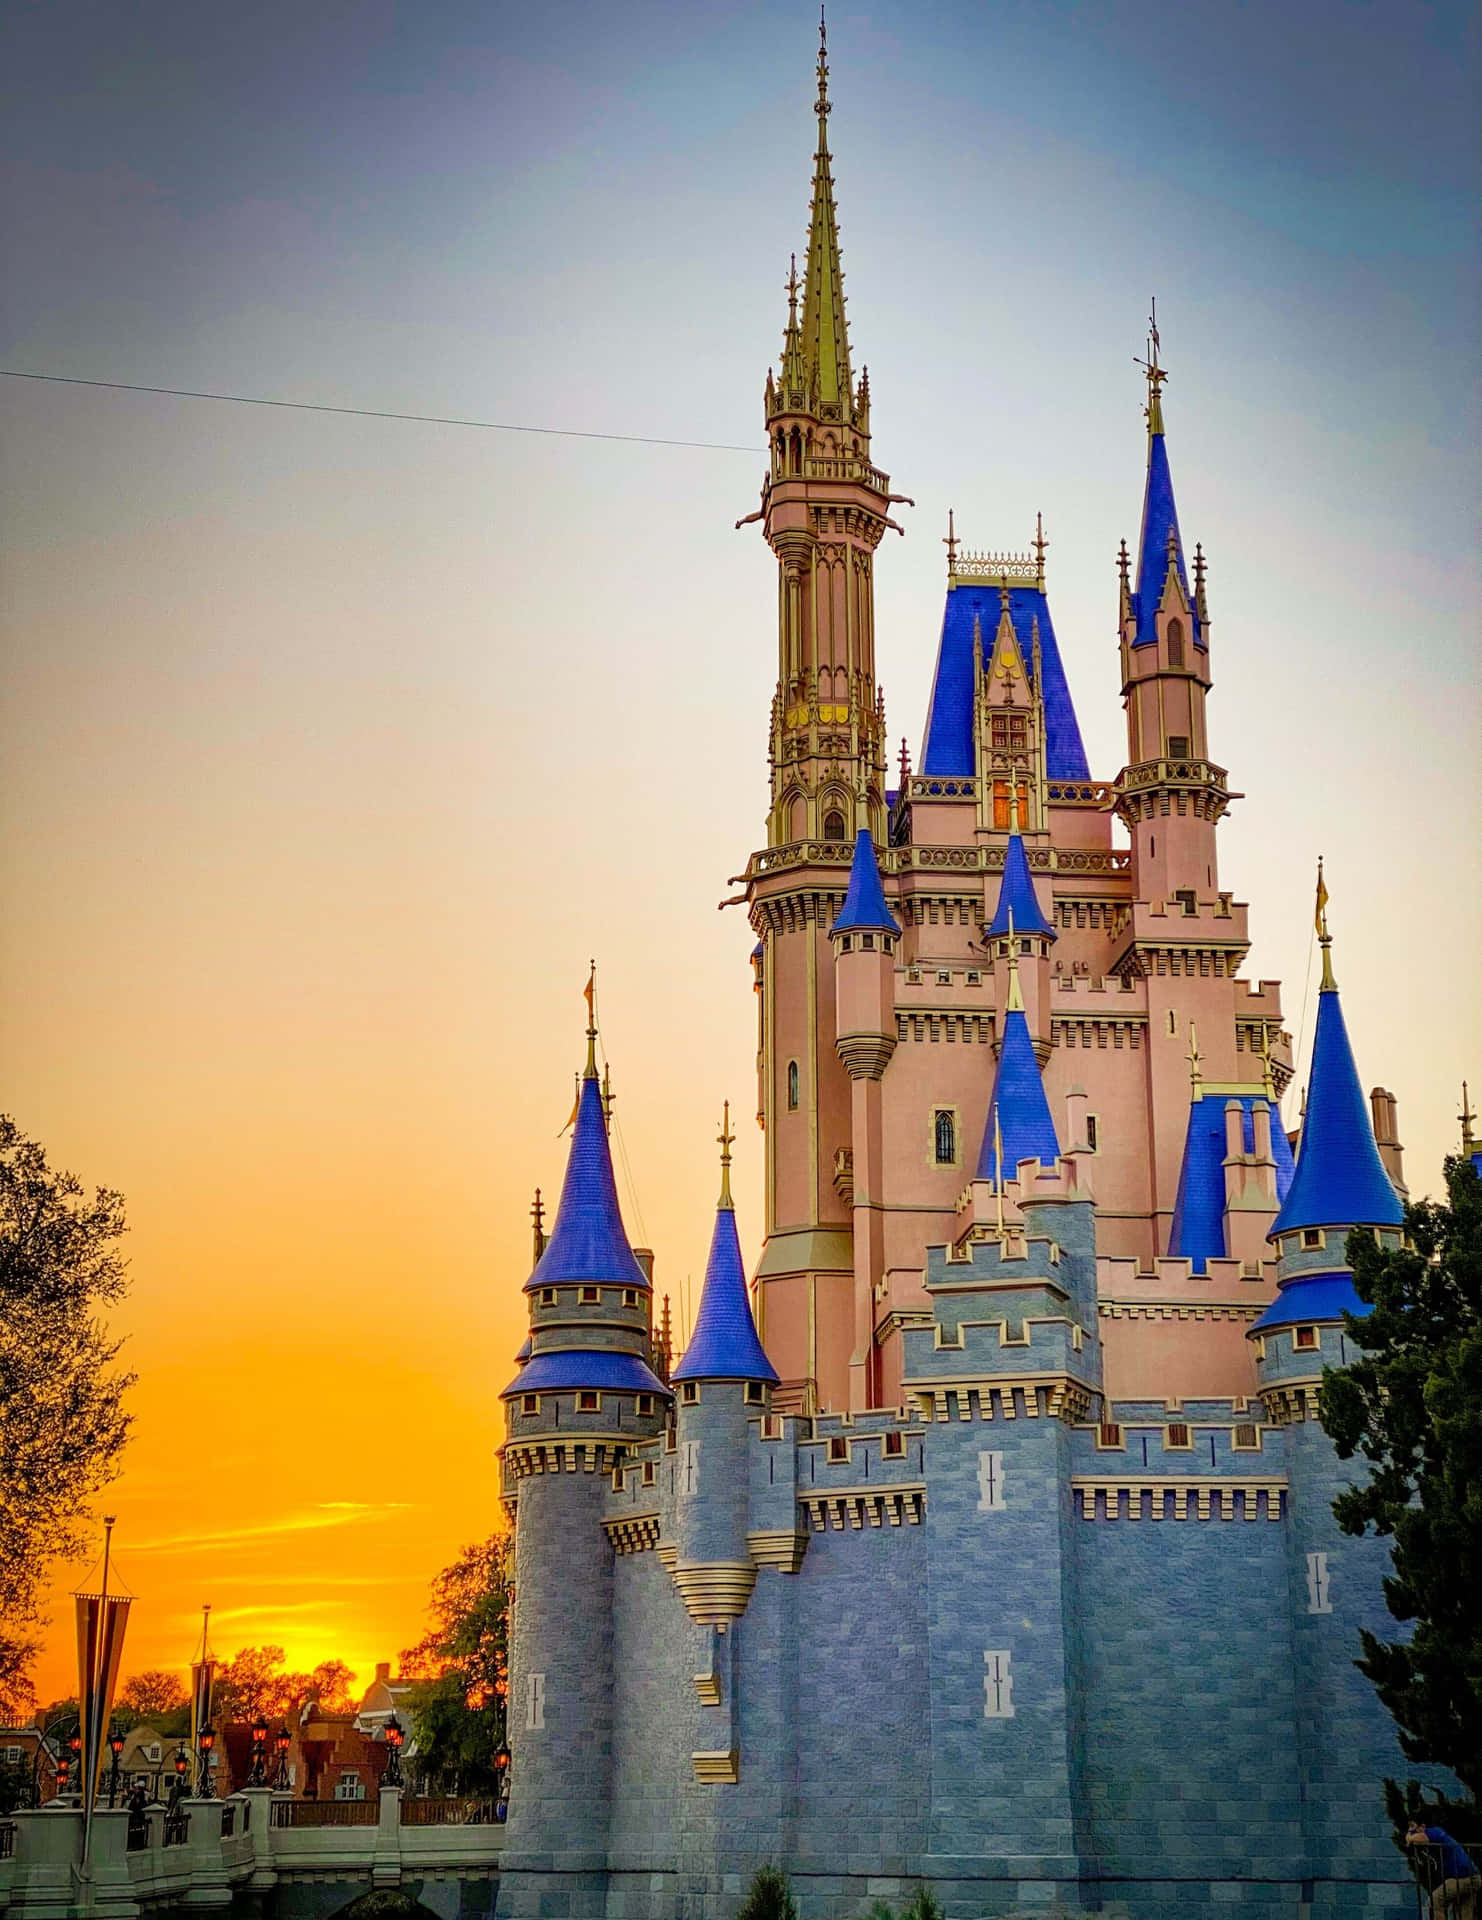 Entdeckemagie Im Glücklichsten Ort Auf Erden - Disney World Wallpaper